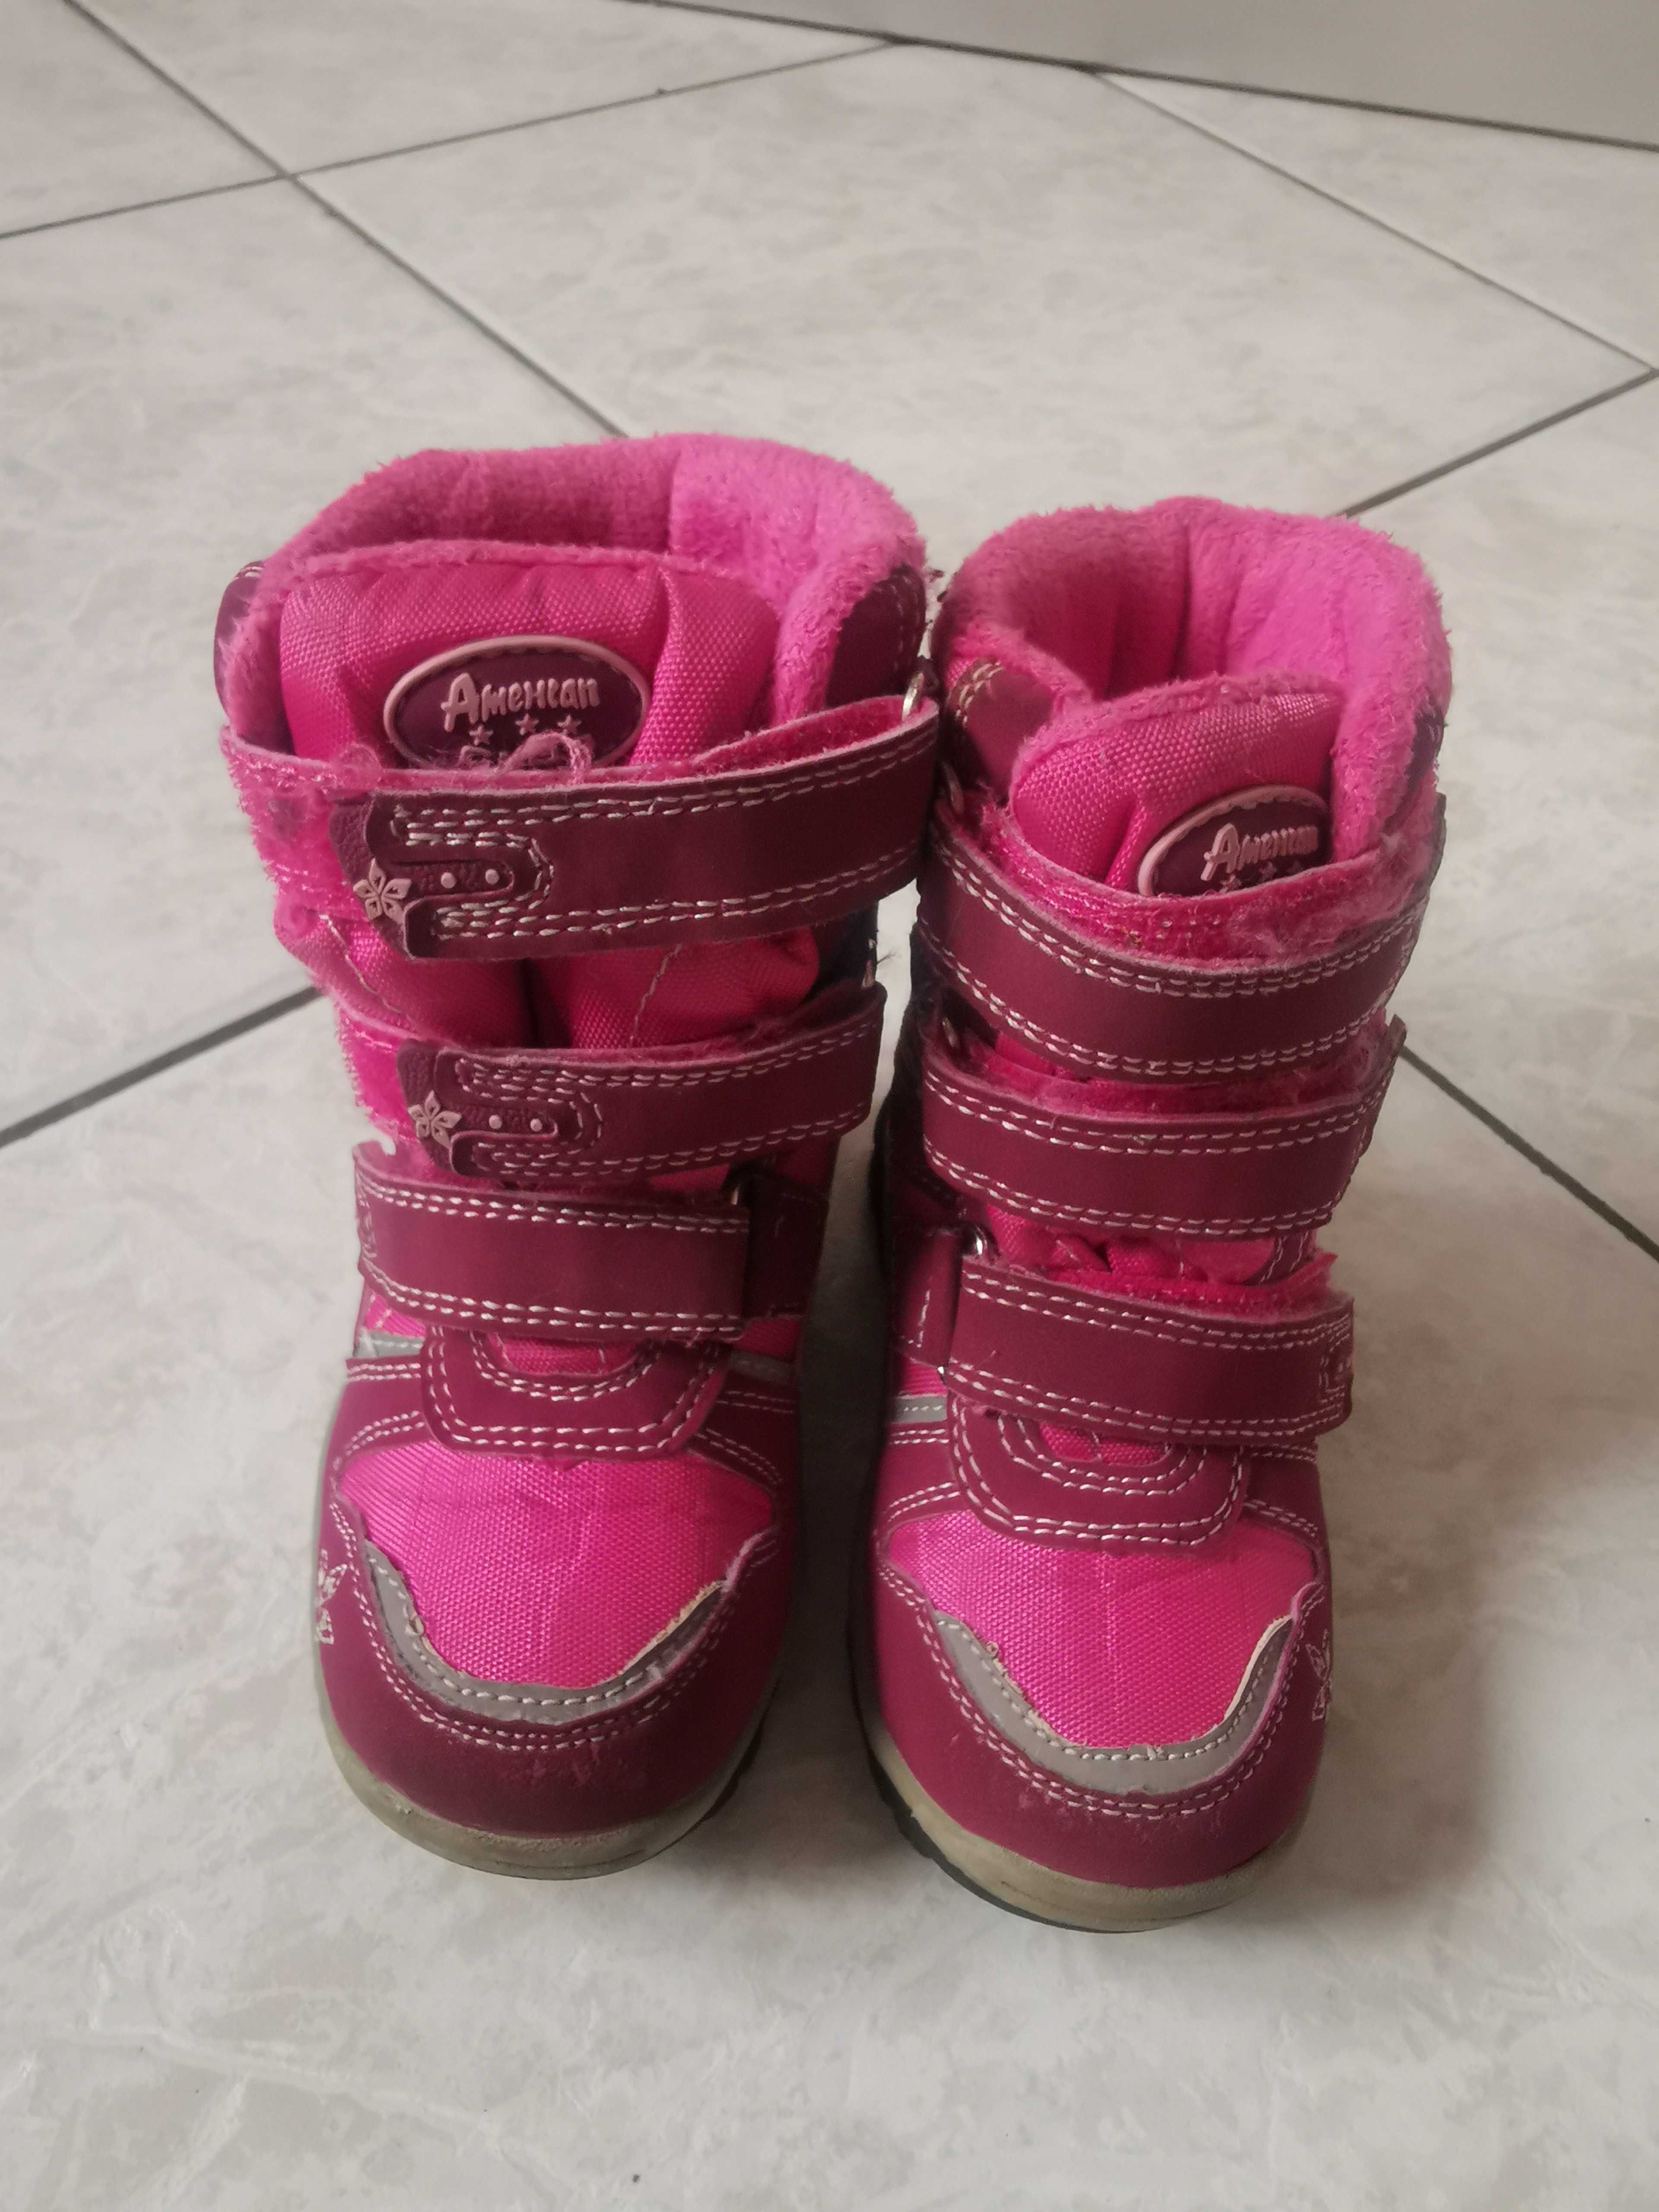 Buty śniegowce na zimę. Różowe. Dla dziewczynki. Rozmiar 24.